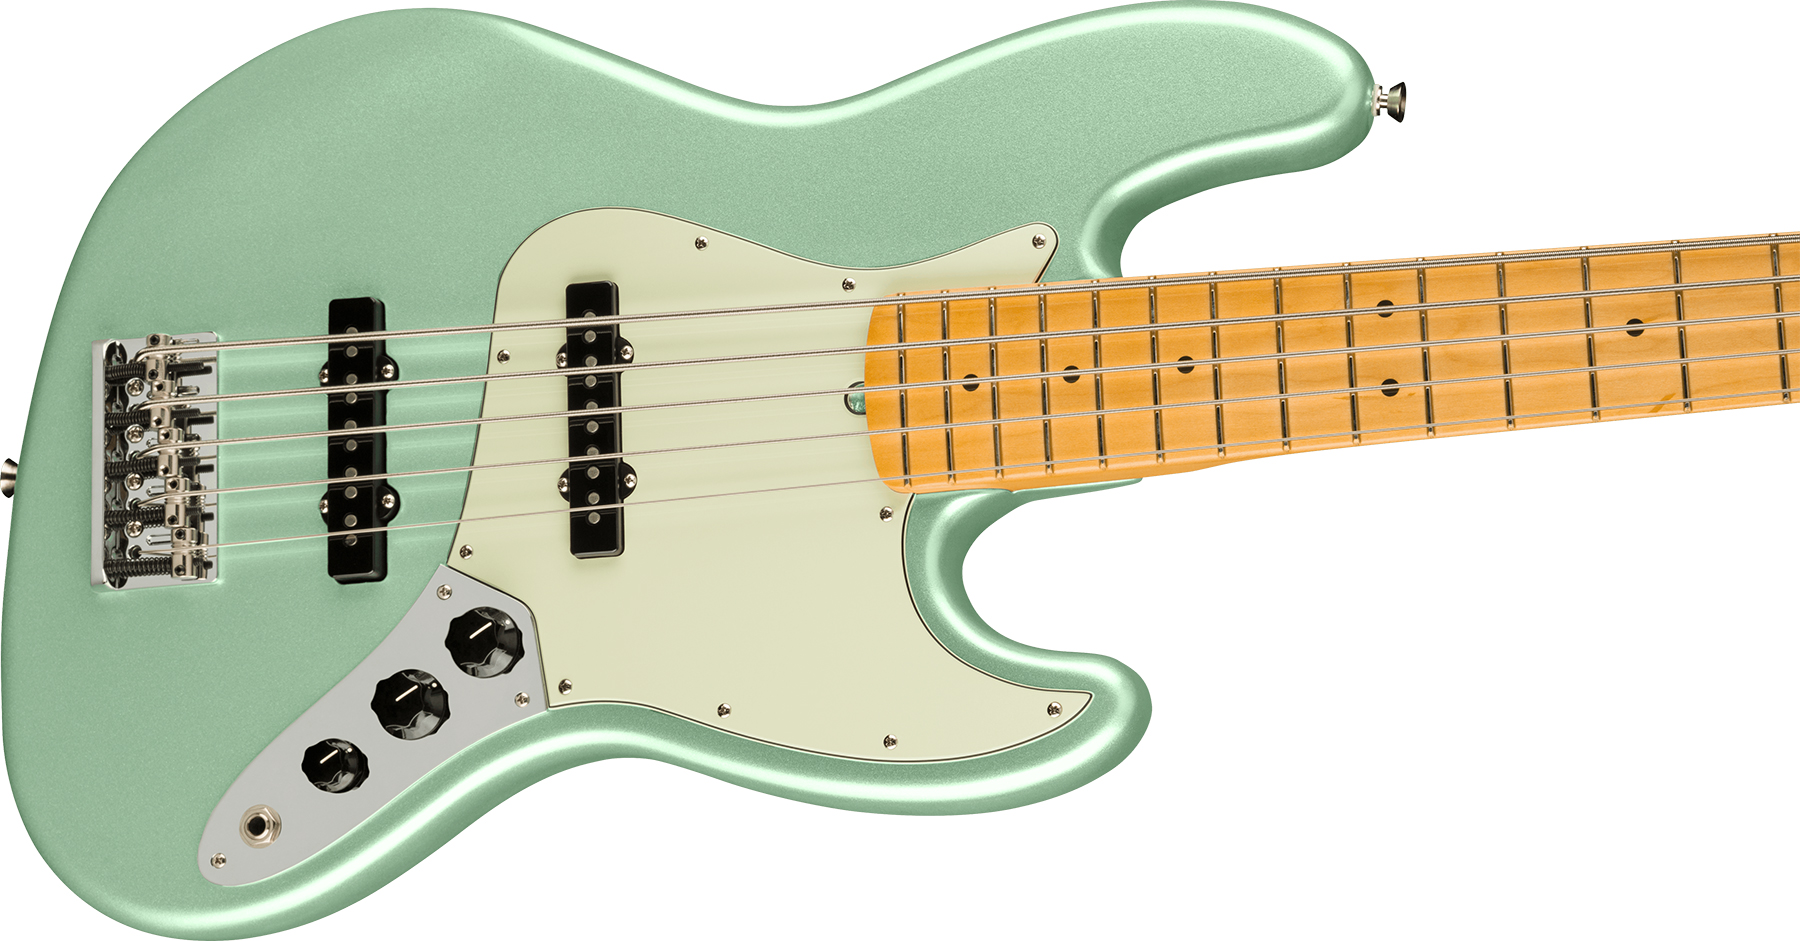 Fender Jazz Bass V American Professional Ii Usa 5-cordes Mn - Mystic Surf Green - Bajo eléctrico de cuerpo sólido - Variation 2